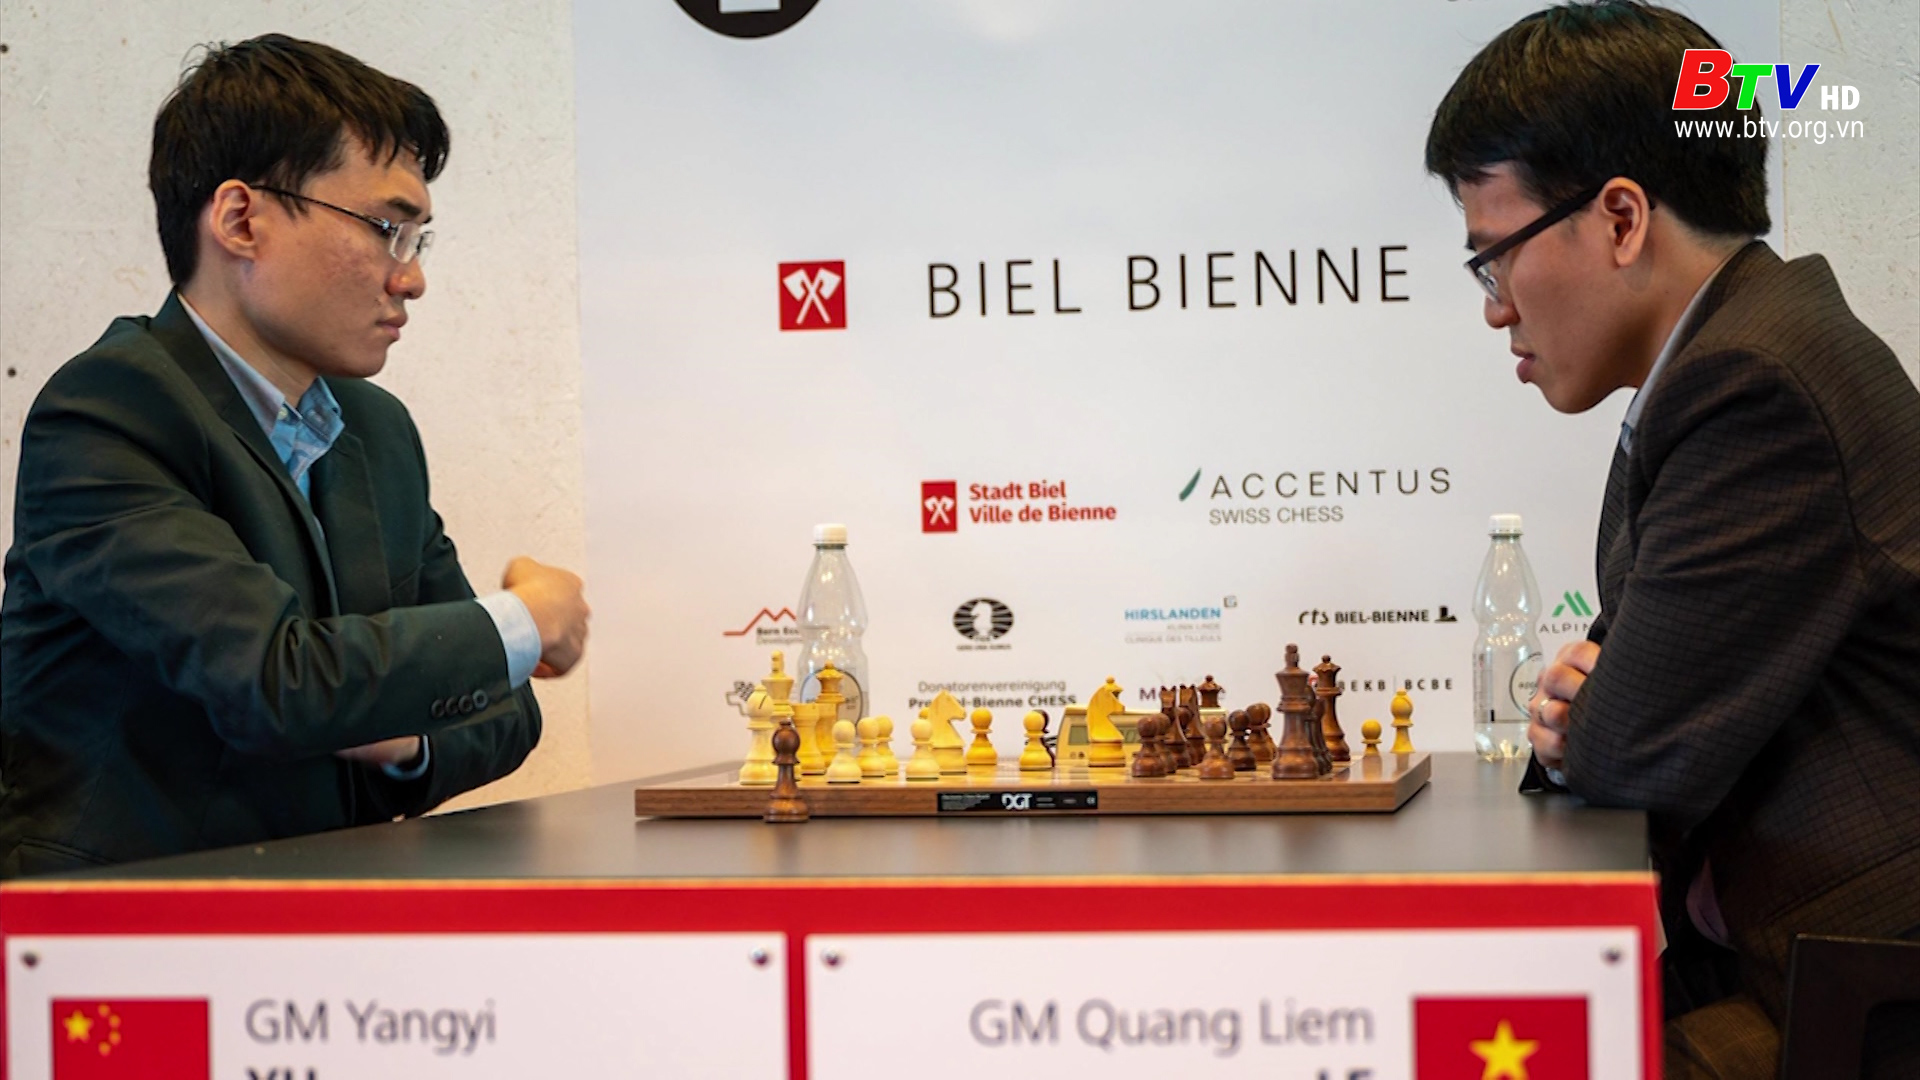 Kỳ thủ Lê Quang Liêm vô địch giải cờ Biel tại Thụy sĩ